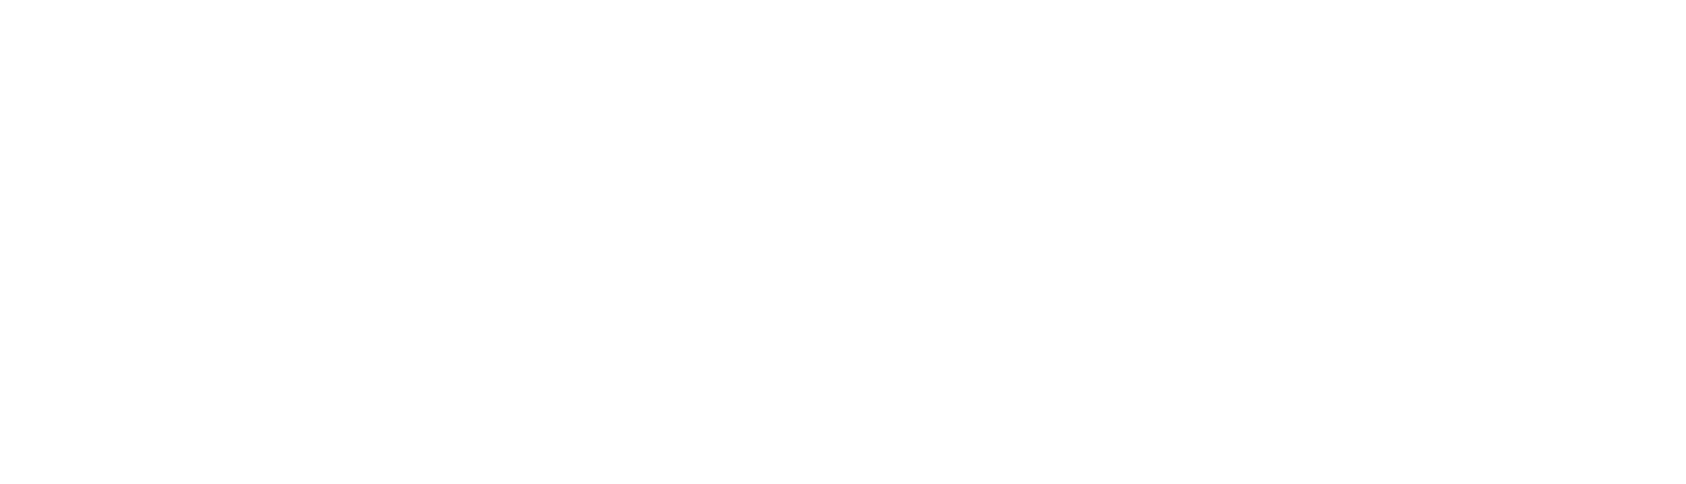 Vanguard Gifted Academy